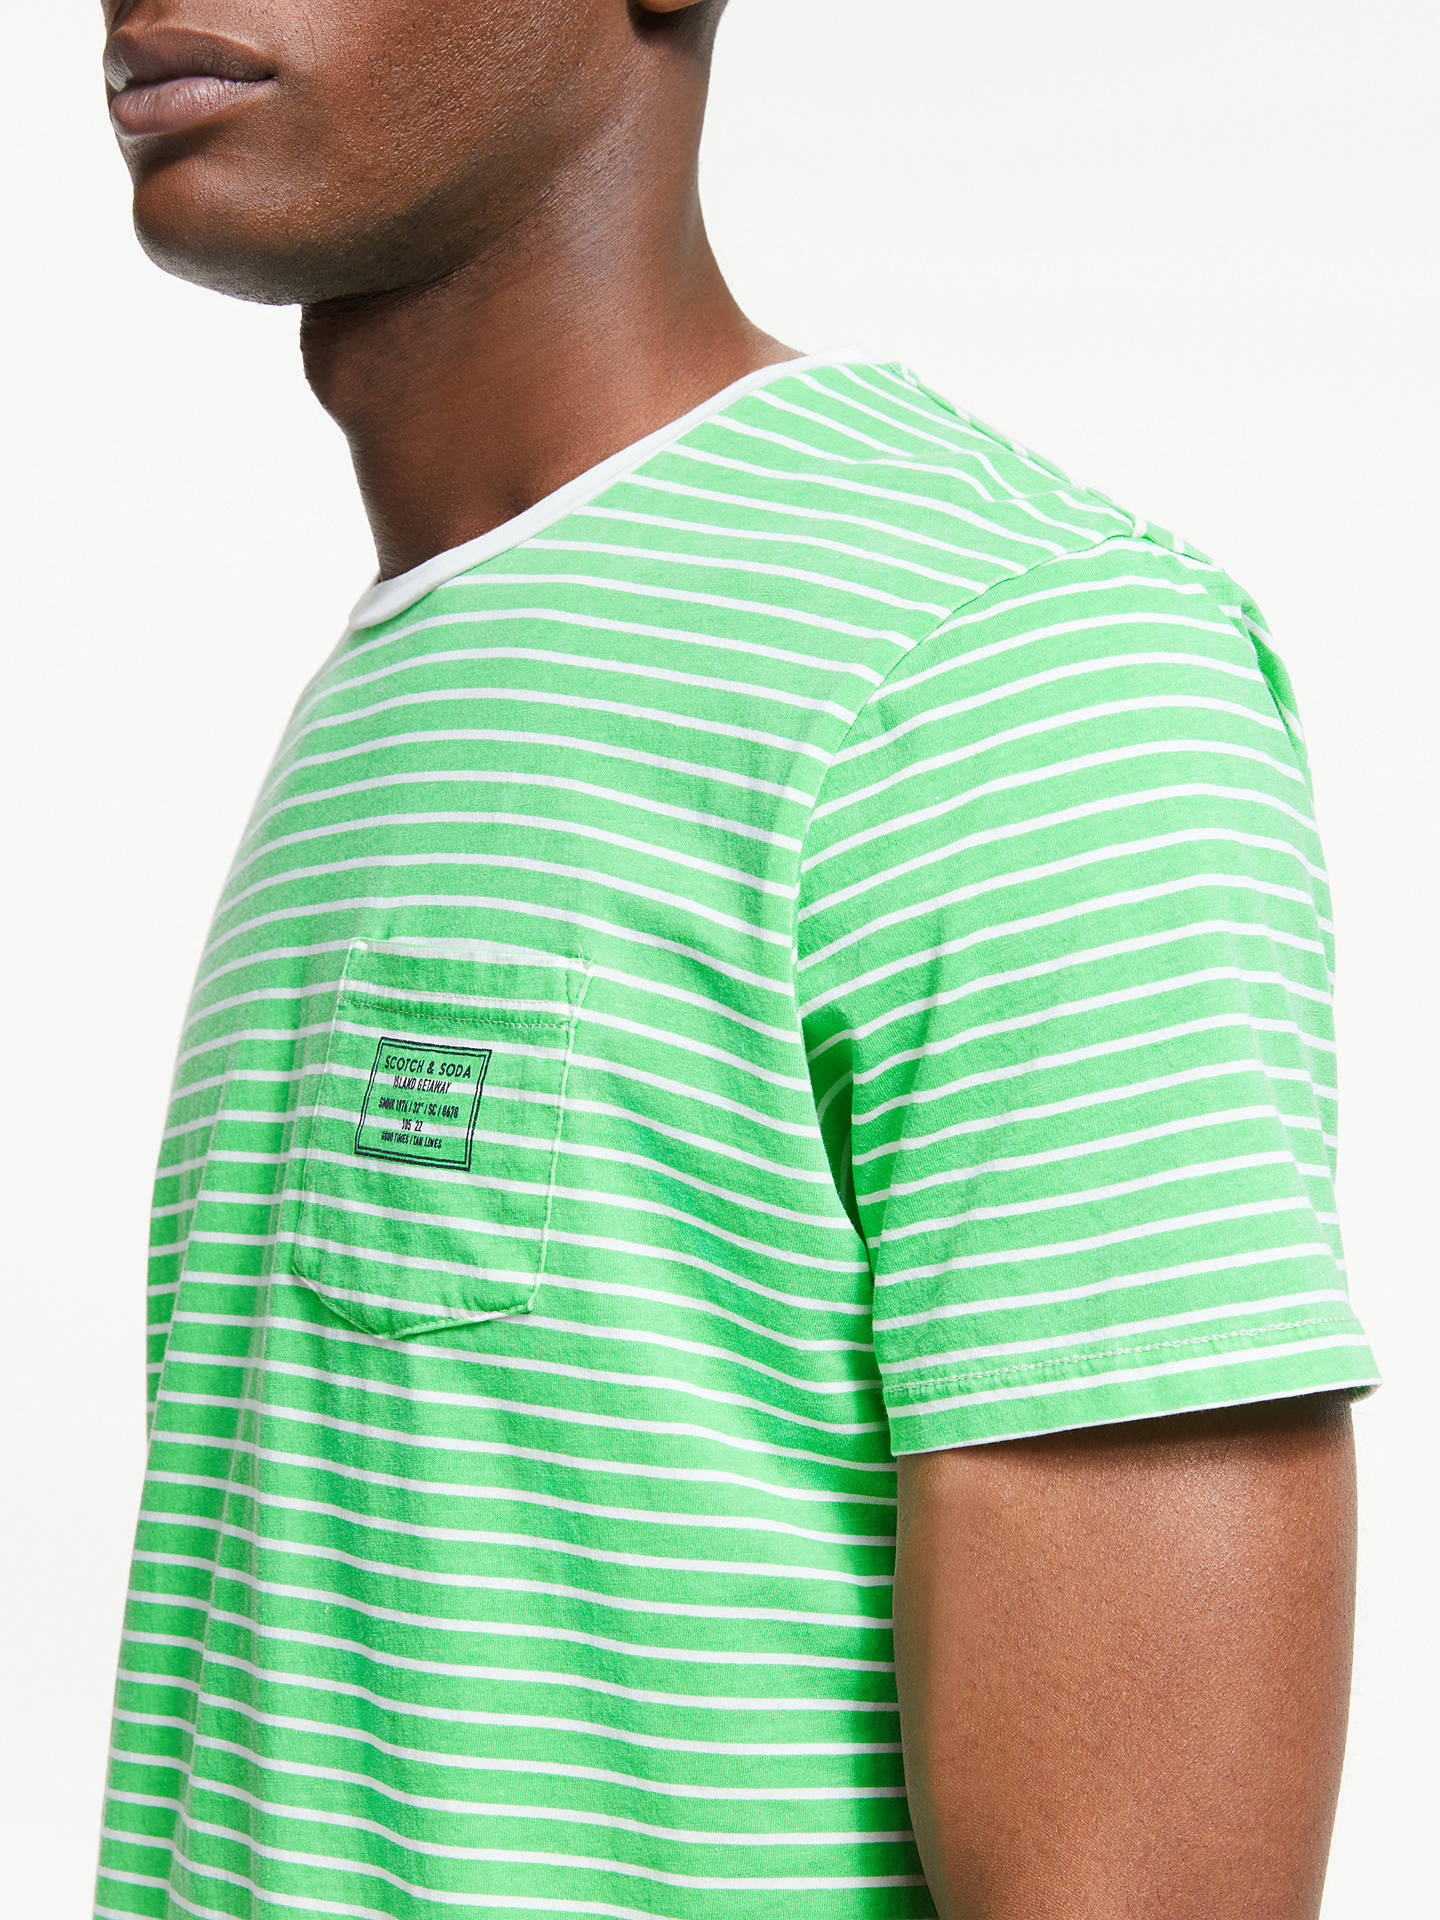 Scotch & Soda Garment Dye Stripe T-Shirt, Green at John Lewis & Partners